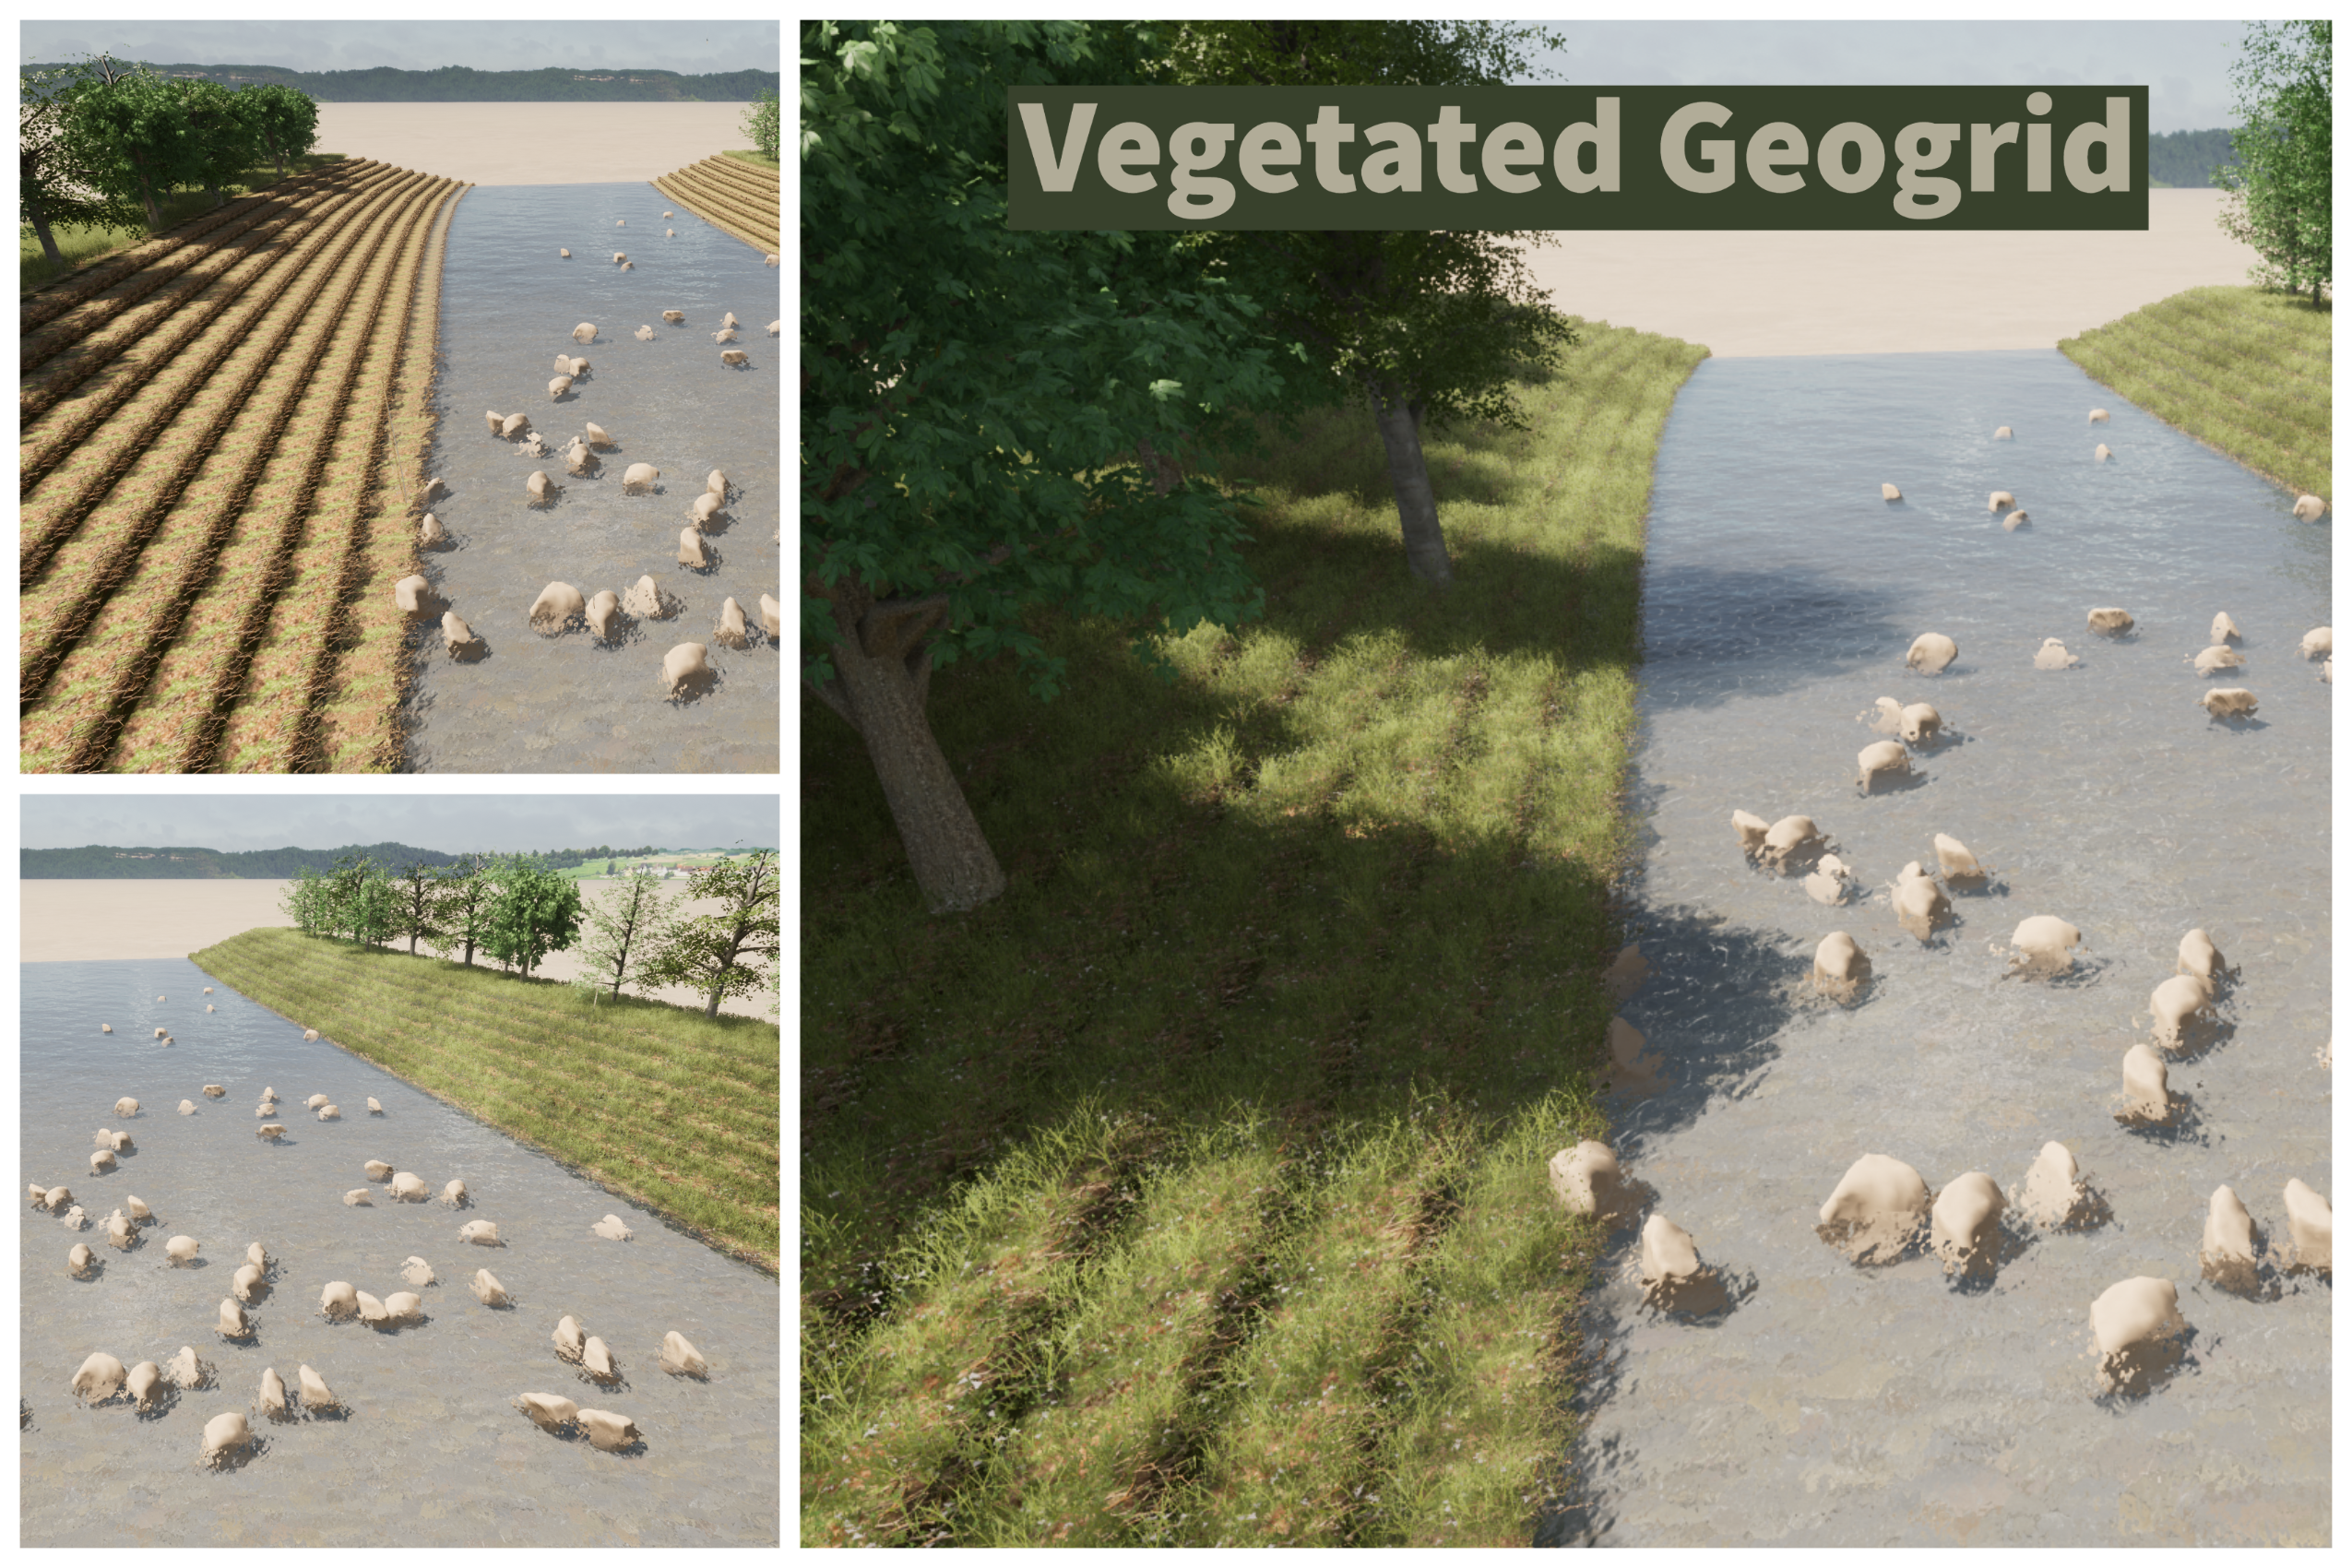 Vegetated Geogrid Image